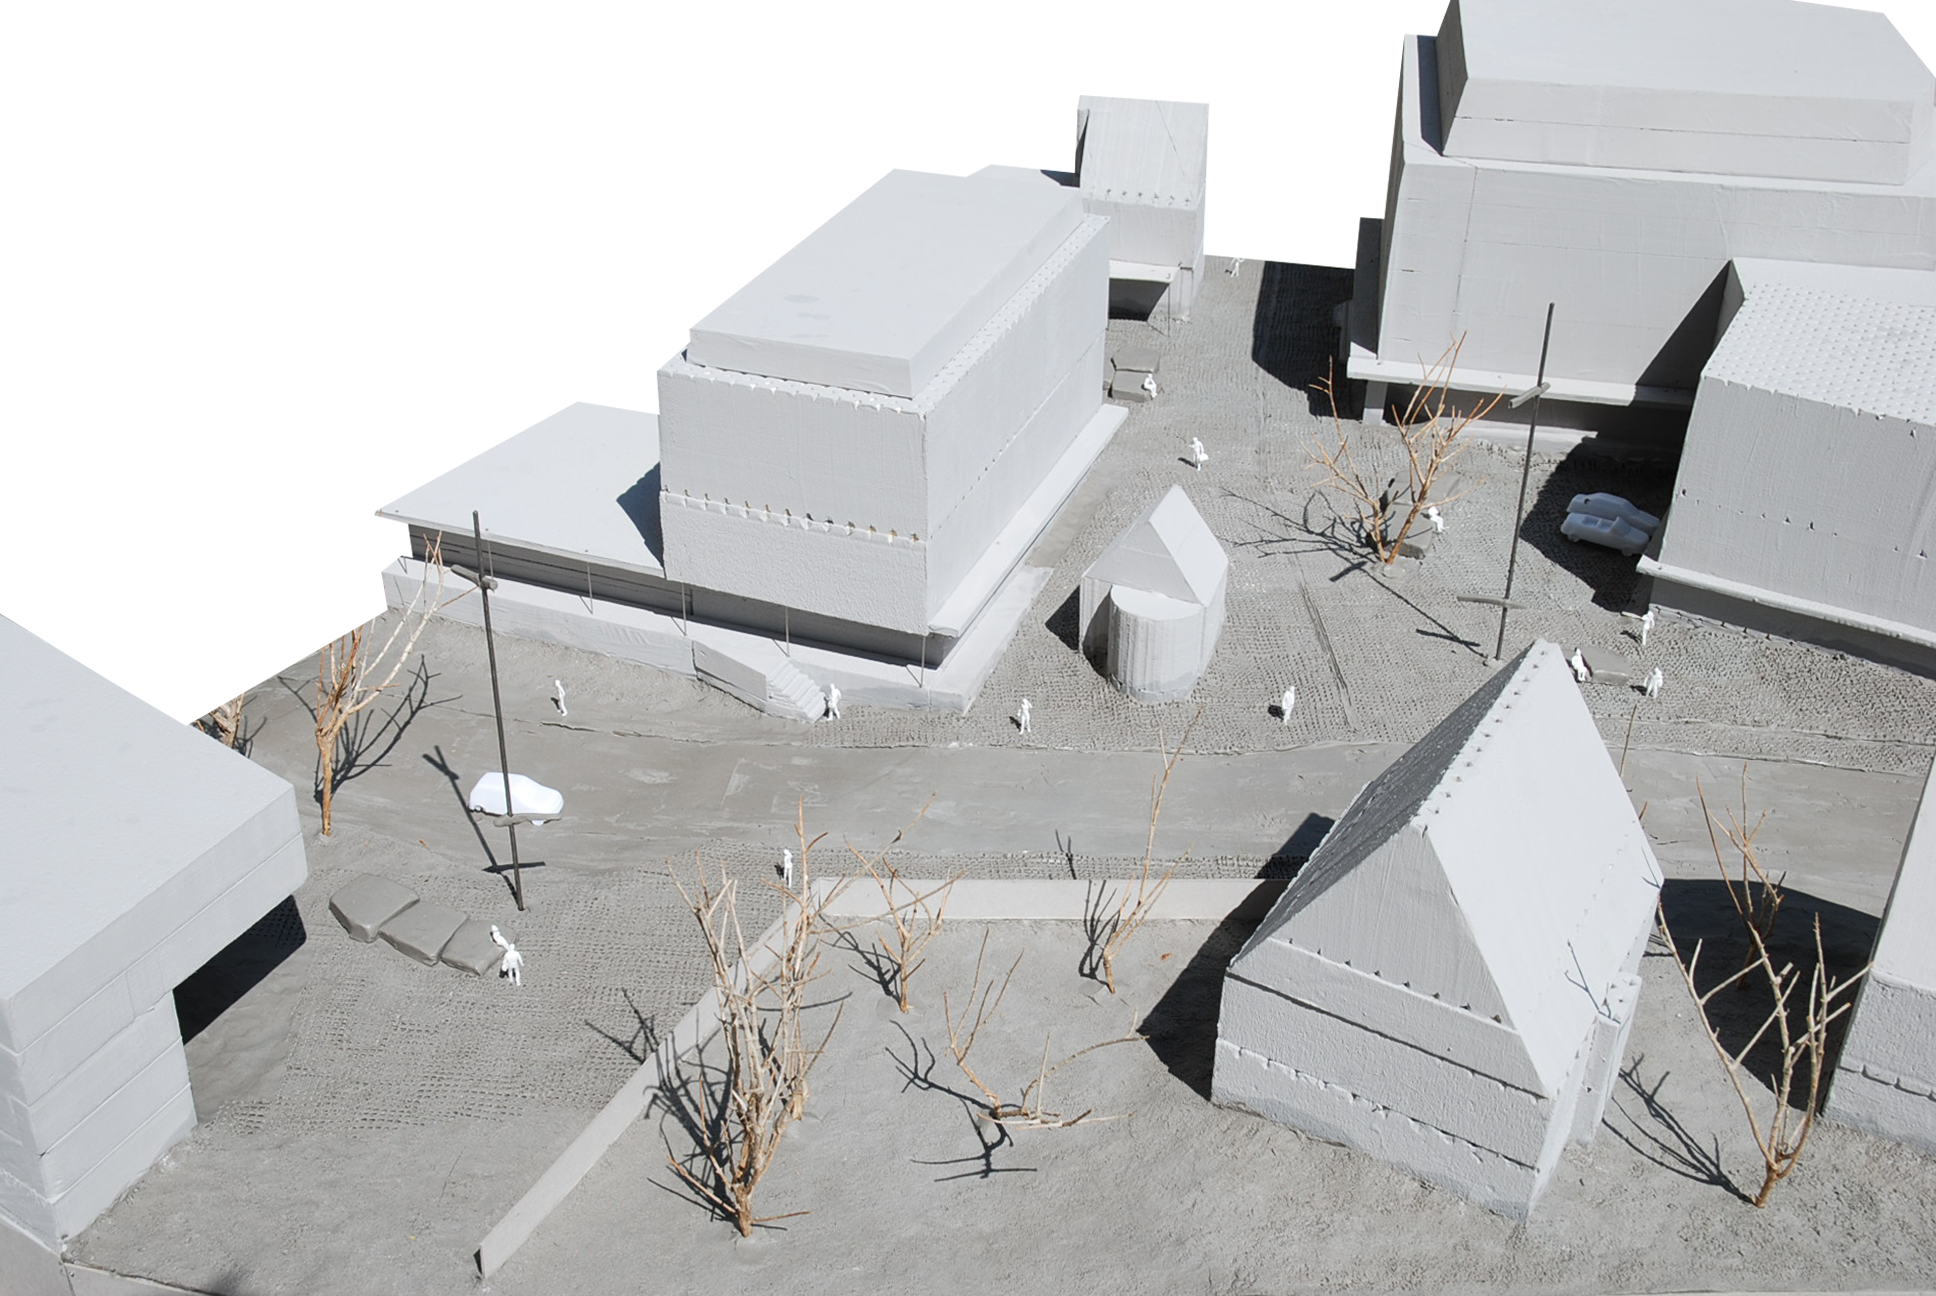 kemptner gate, perspective, houses, sketch, visualization, model